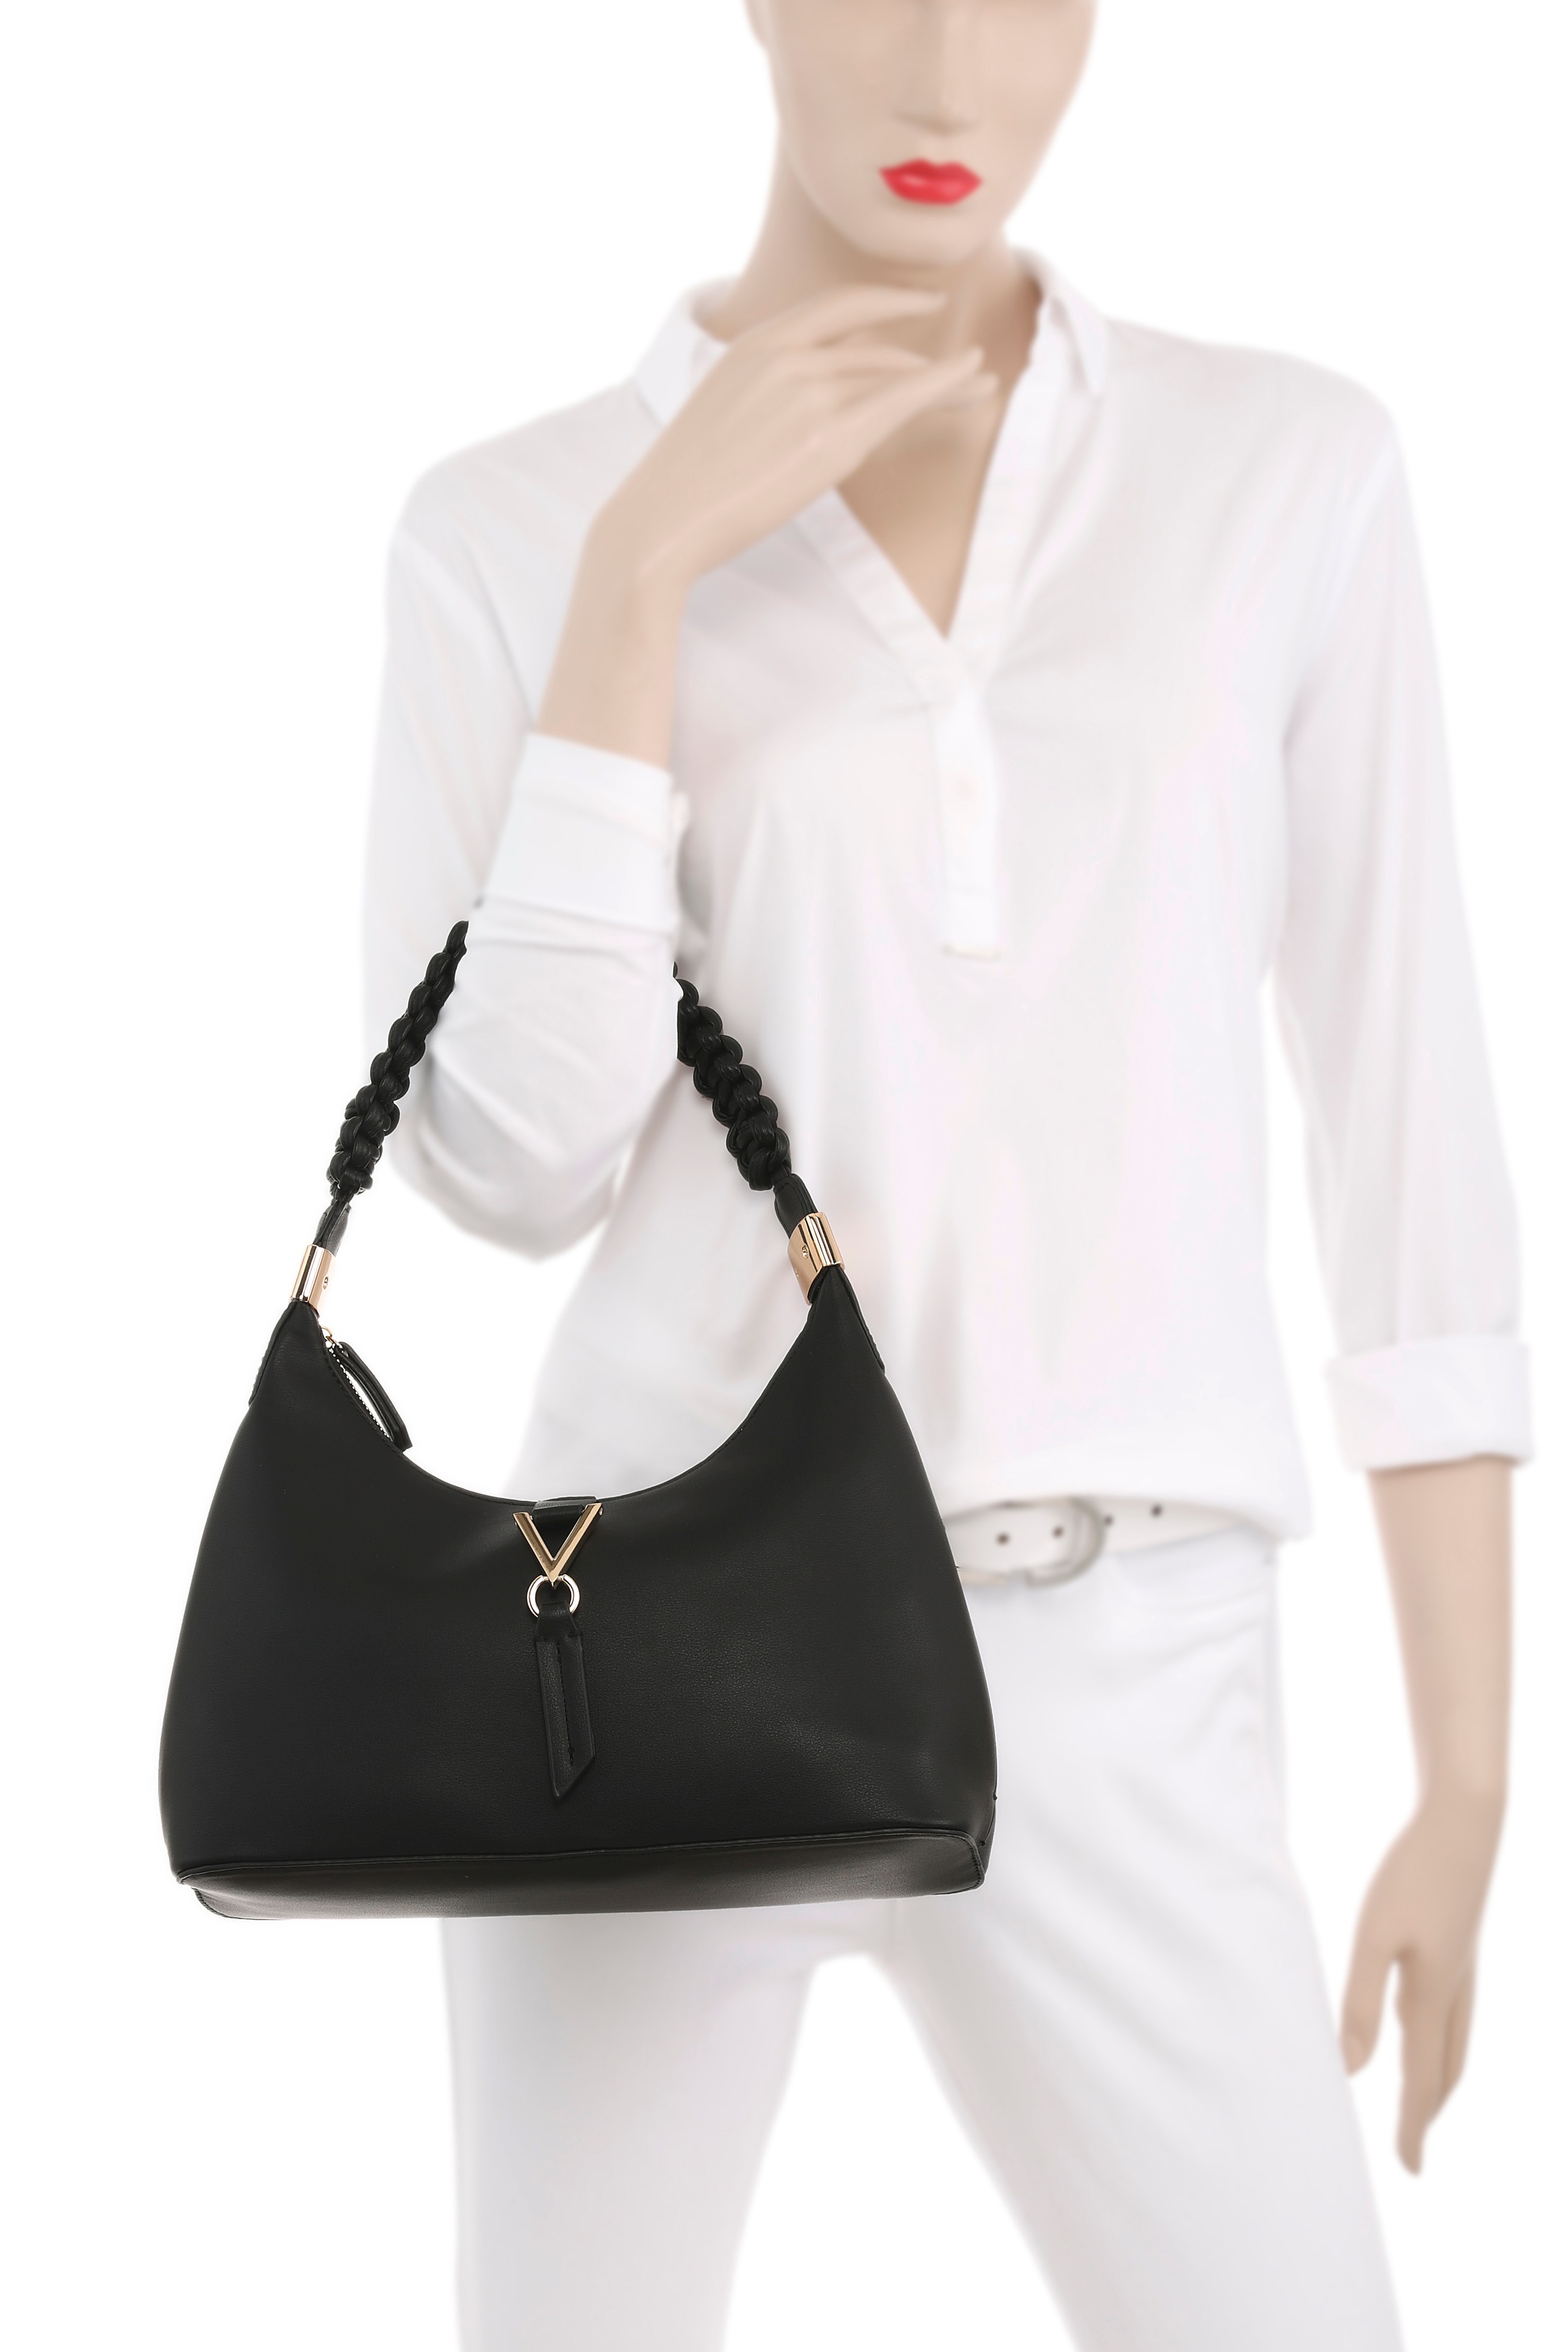 Miranda Hobo Bag in Black - Valentino Bags